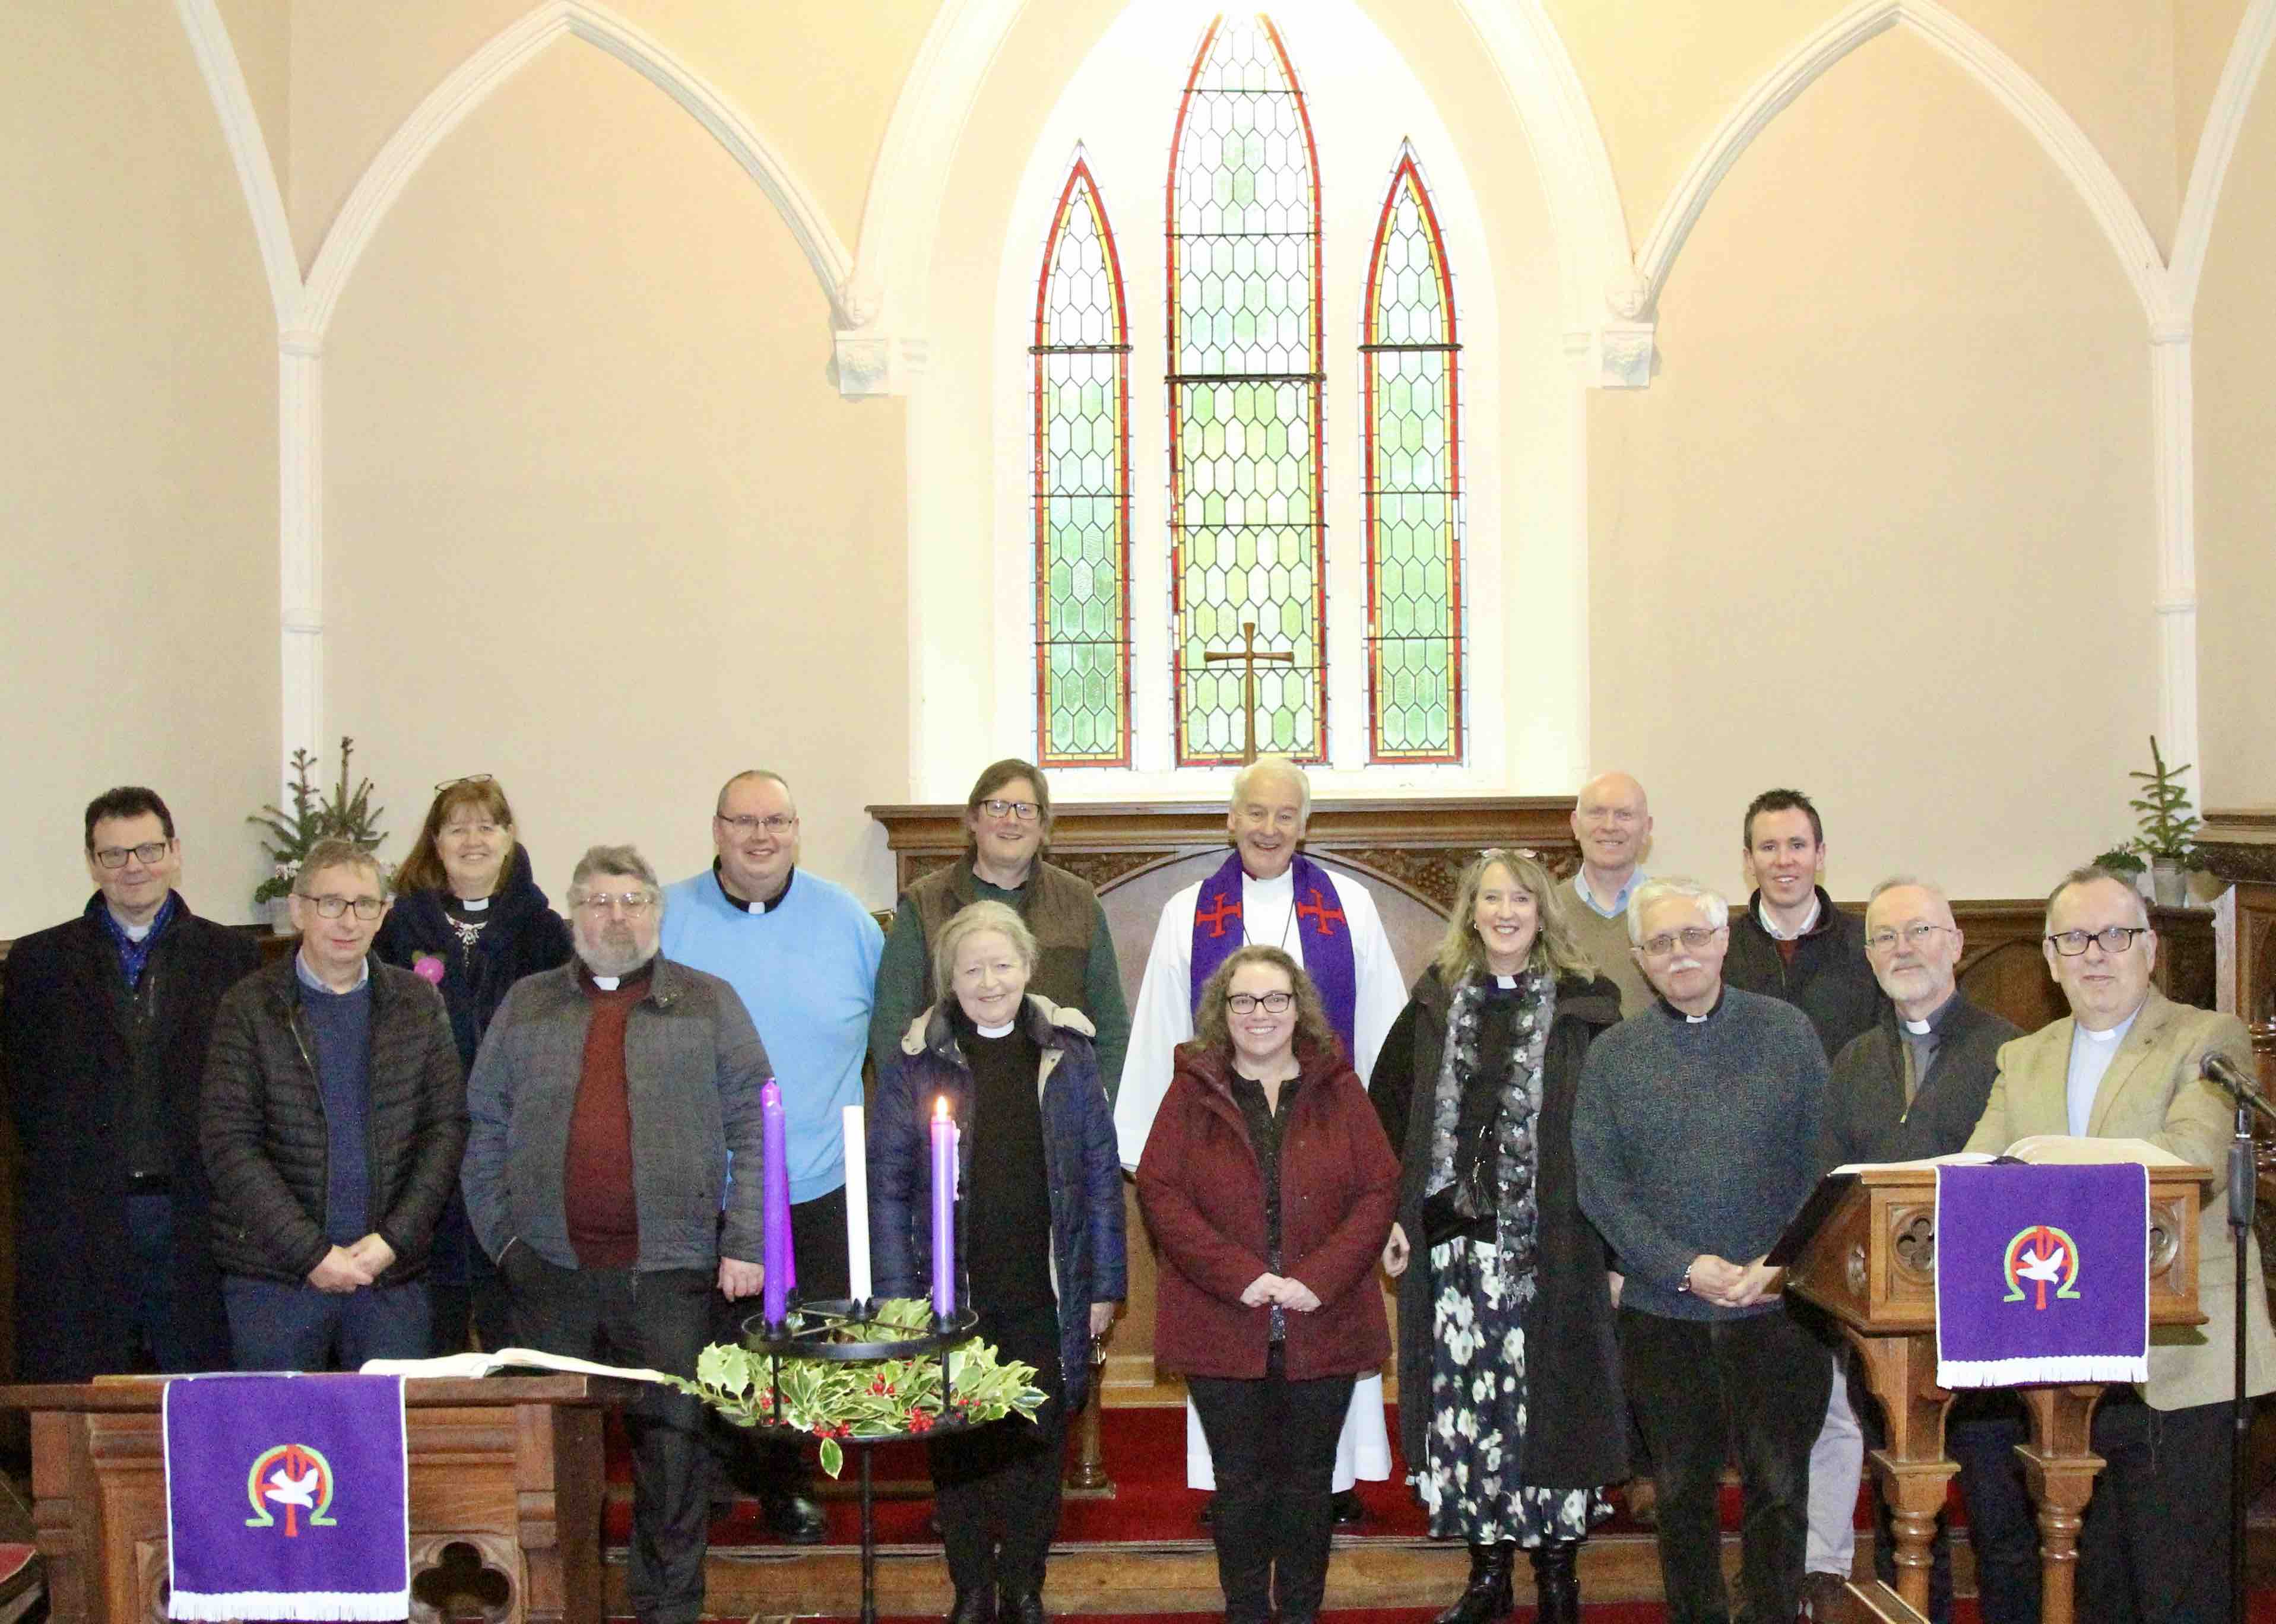 Culto Snowball Church Ireland 06.02.2022, Culto Snowball Church Ireland  06.02.2022, By SnowBall Church Ireland - Dublin